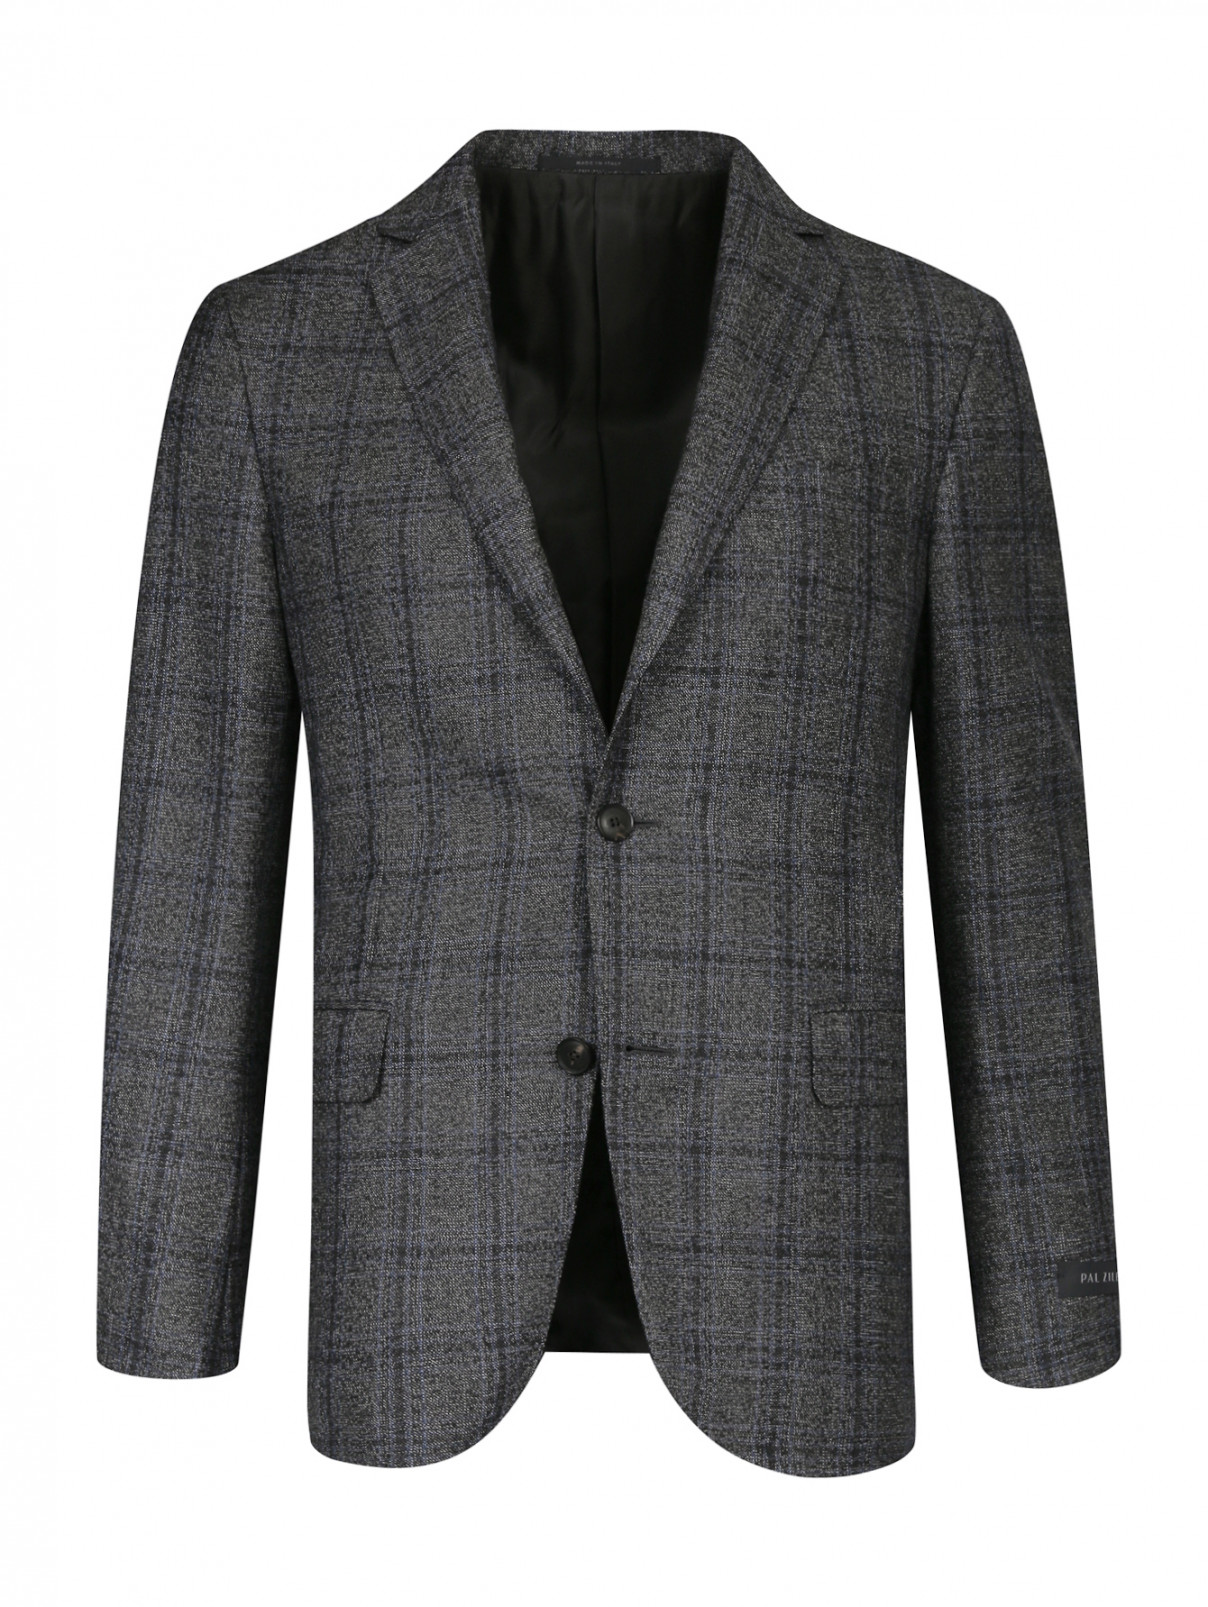 Пиджак из шерсти Pal Zileri  –  Общий вид  – Цвет:  Серый